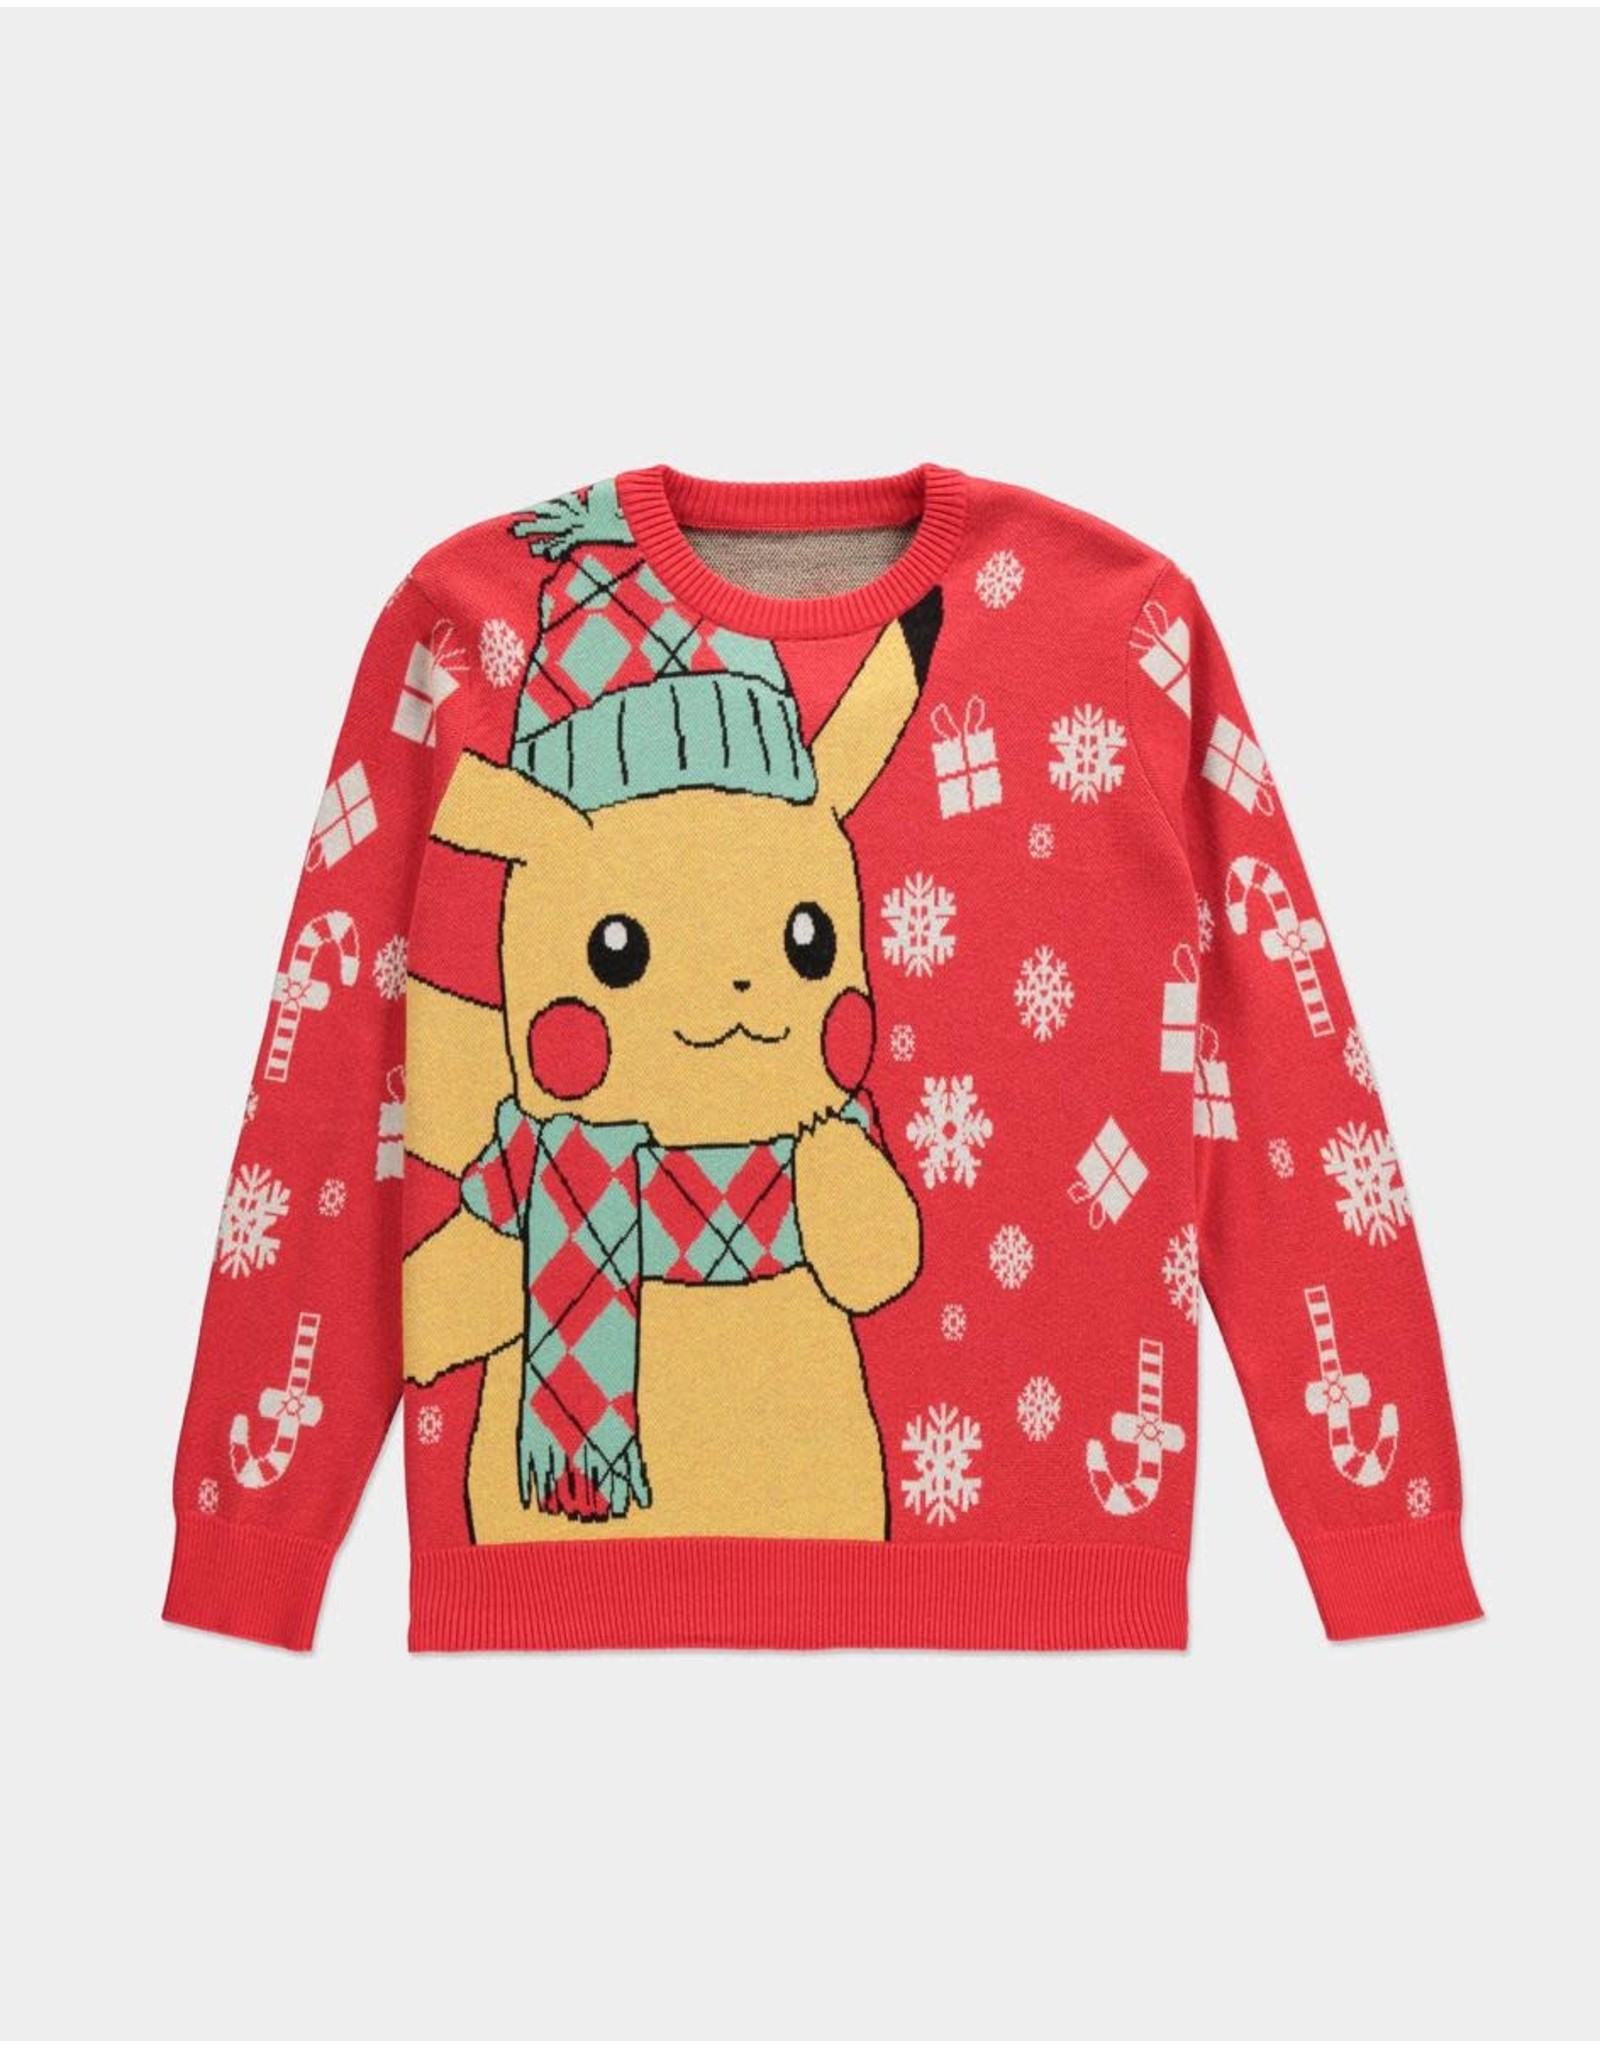 Pokémon Pikachu Red Christmas Sweater